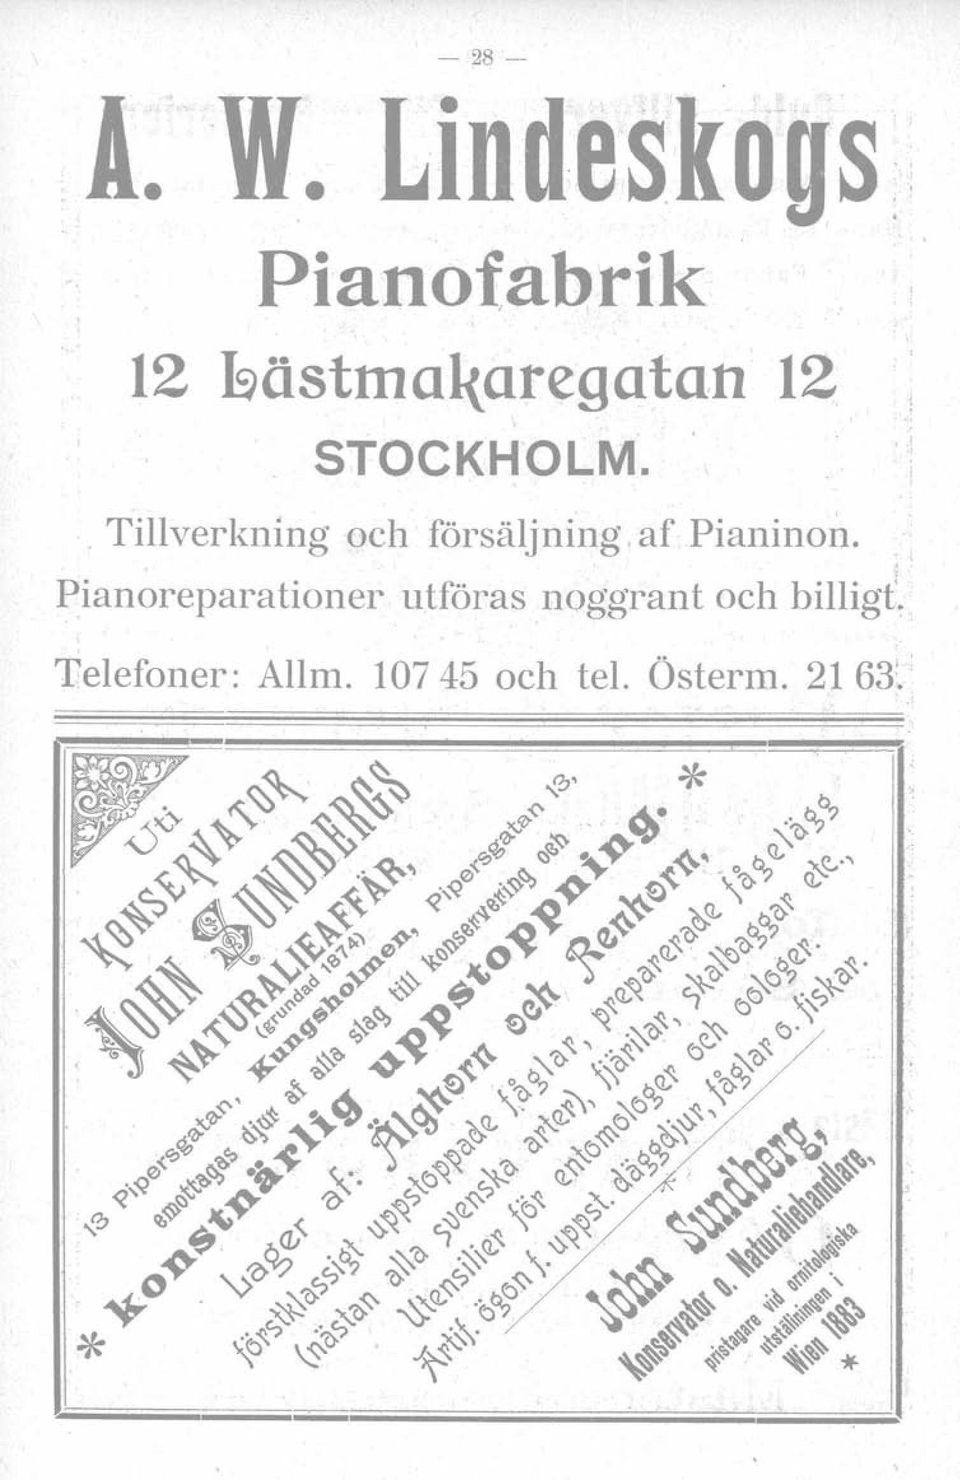 STOCKHOLM.. Tillverkning och försäljning, af Pianinon.